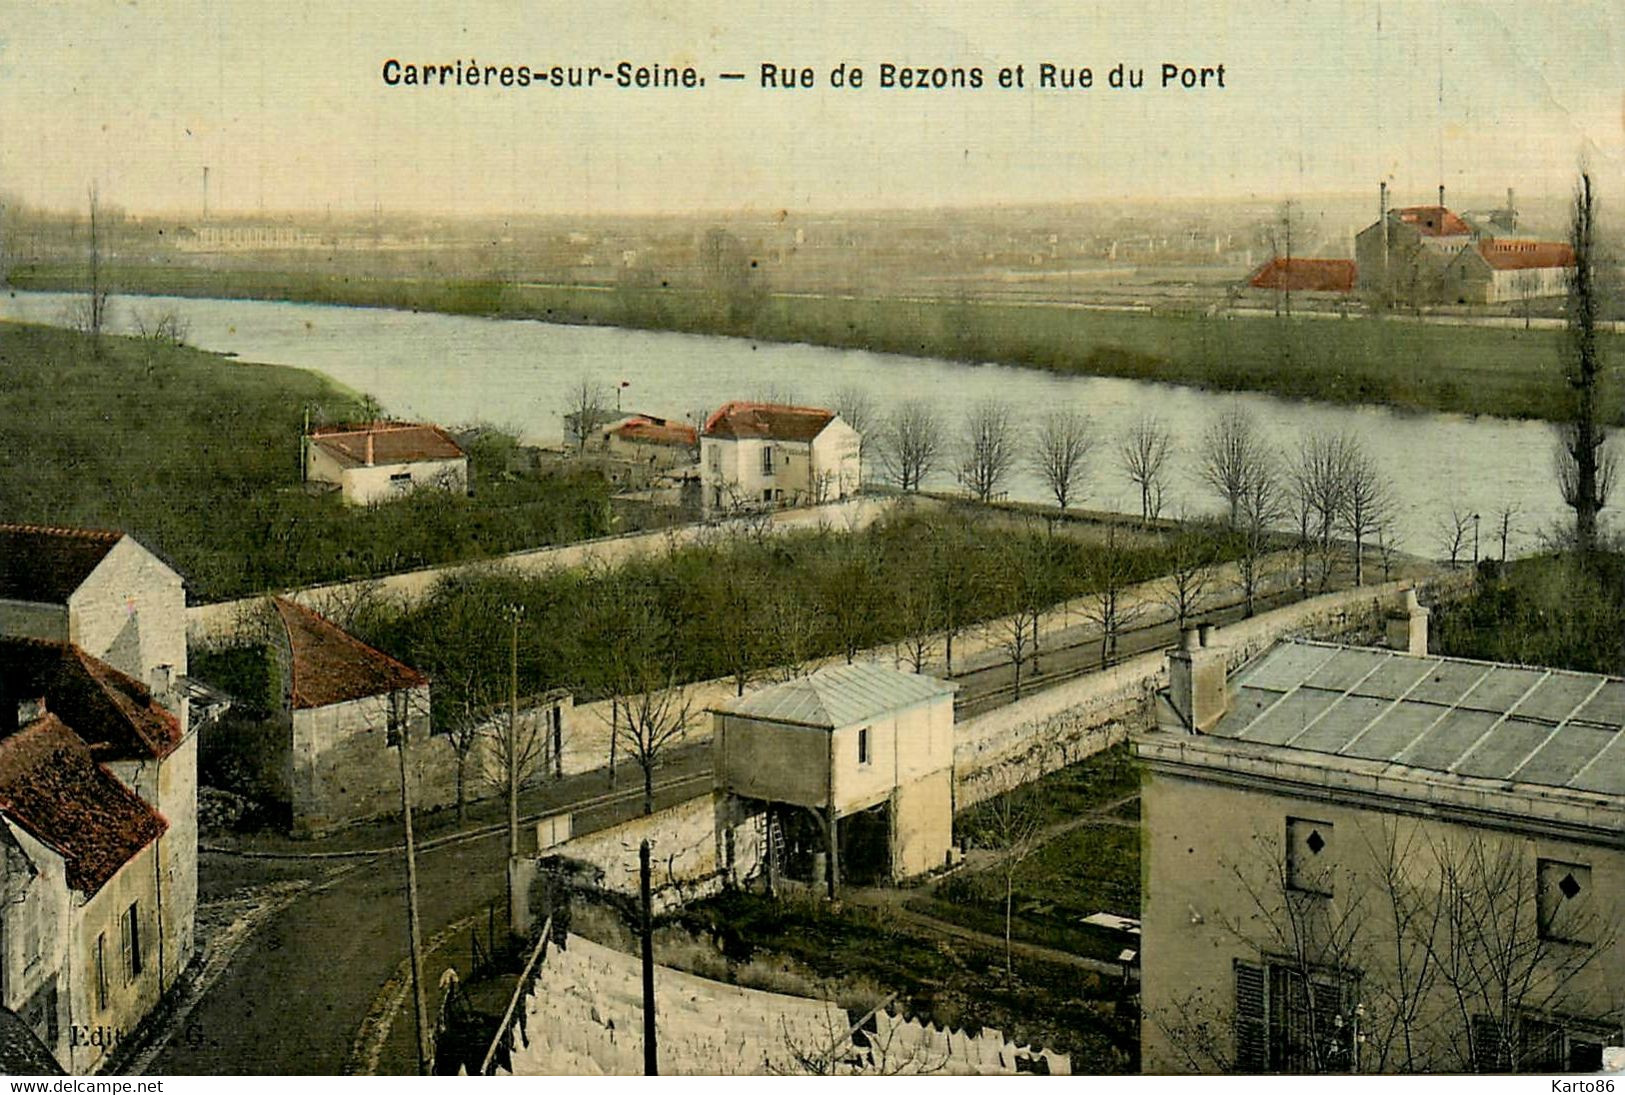 Carrières Sur Seine * 1907 * Rue De Bezons Et Rue Du Port * Cpa Toilée Colorisée - Carrières-sur-Seine